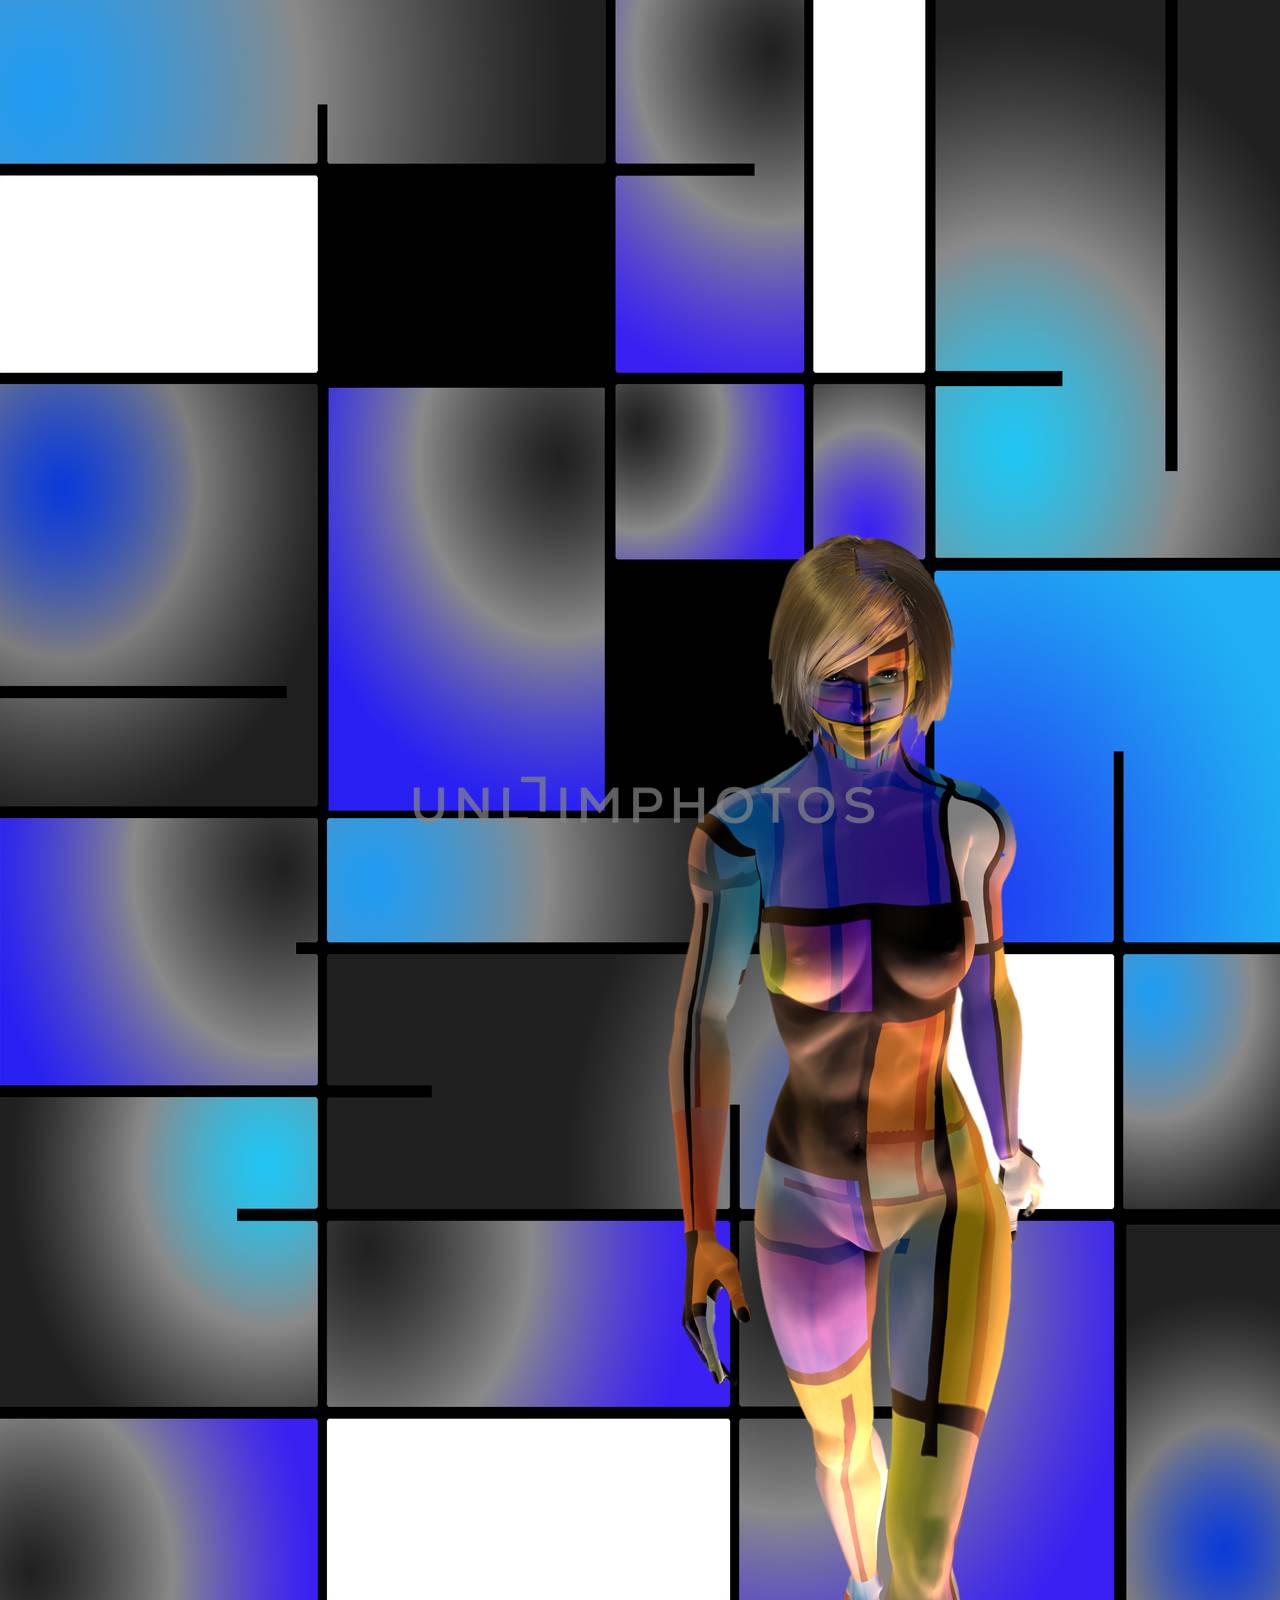 3D woman's model in art space by applesstock